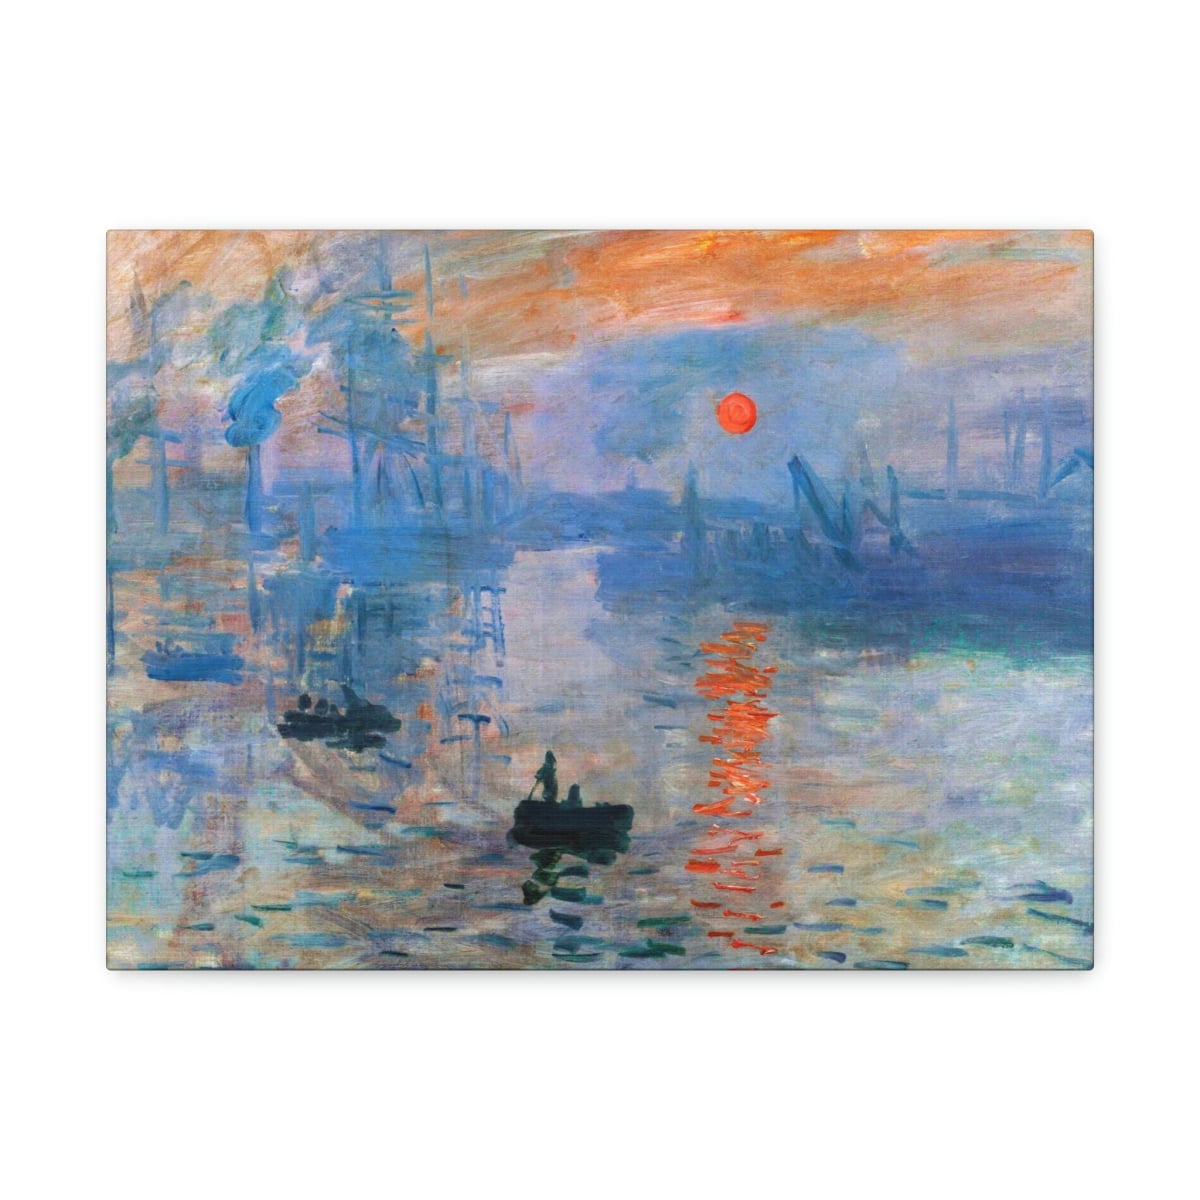 Impression Sunrise by Claude Monet Art Canvas Gallery Wraps